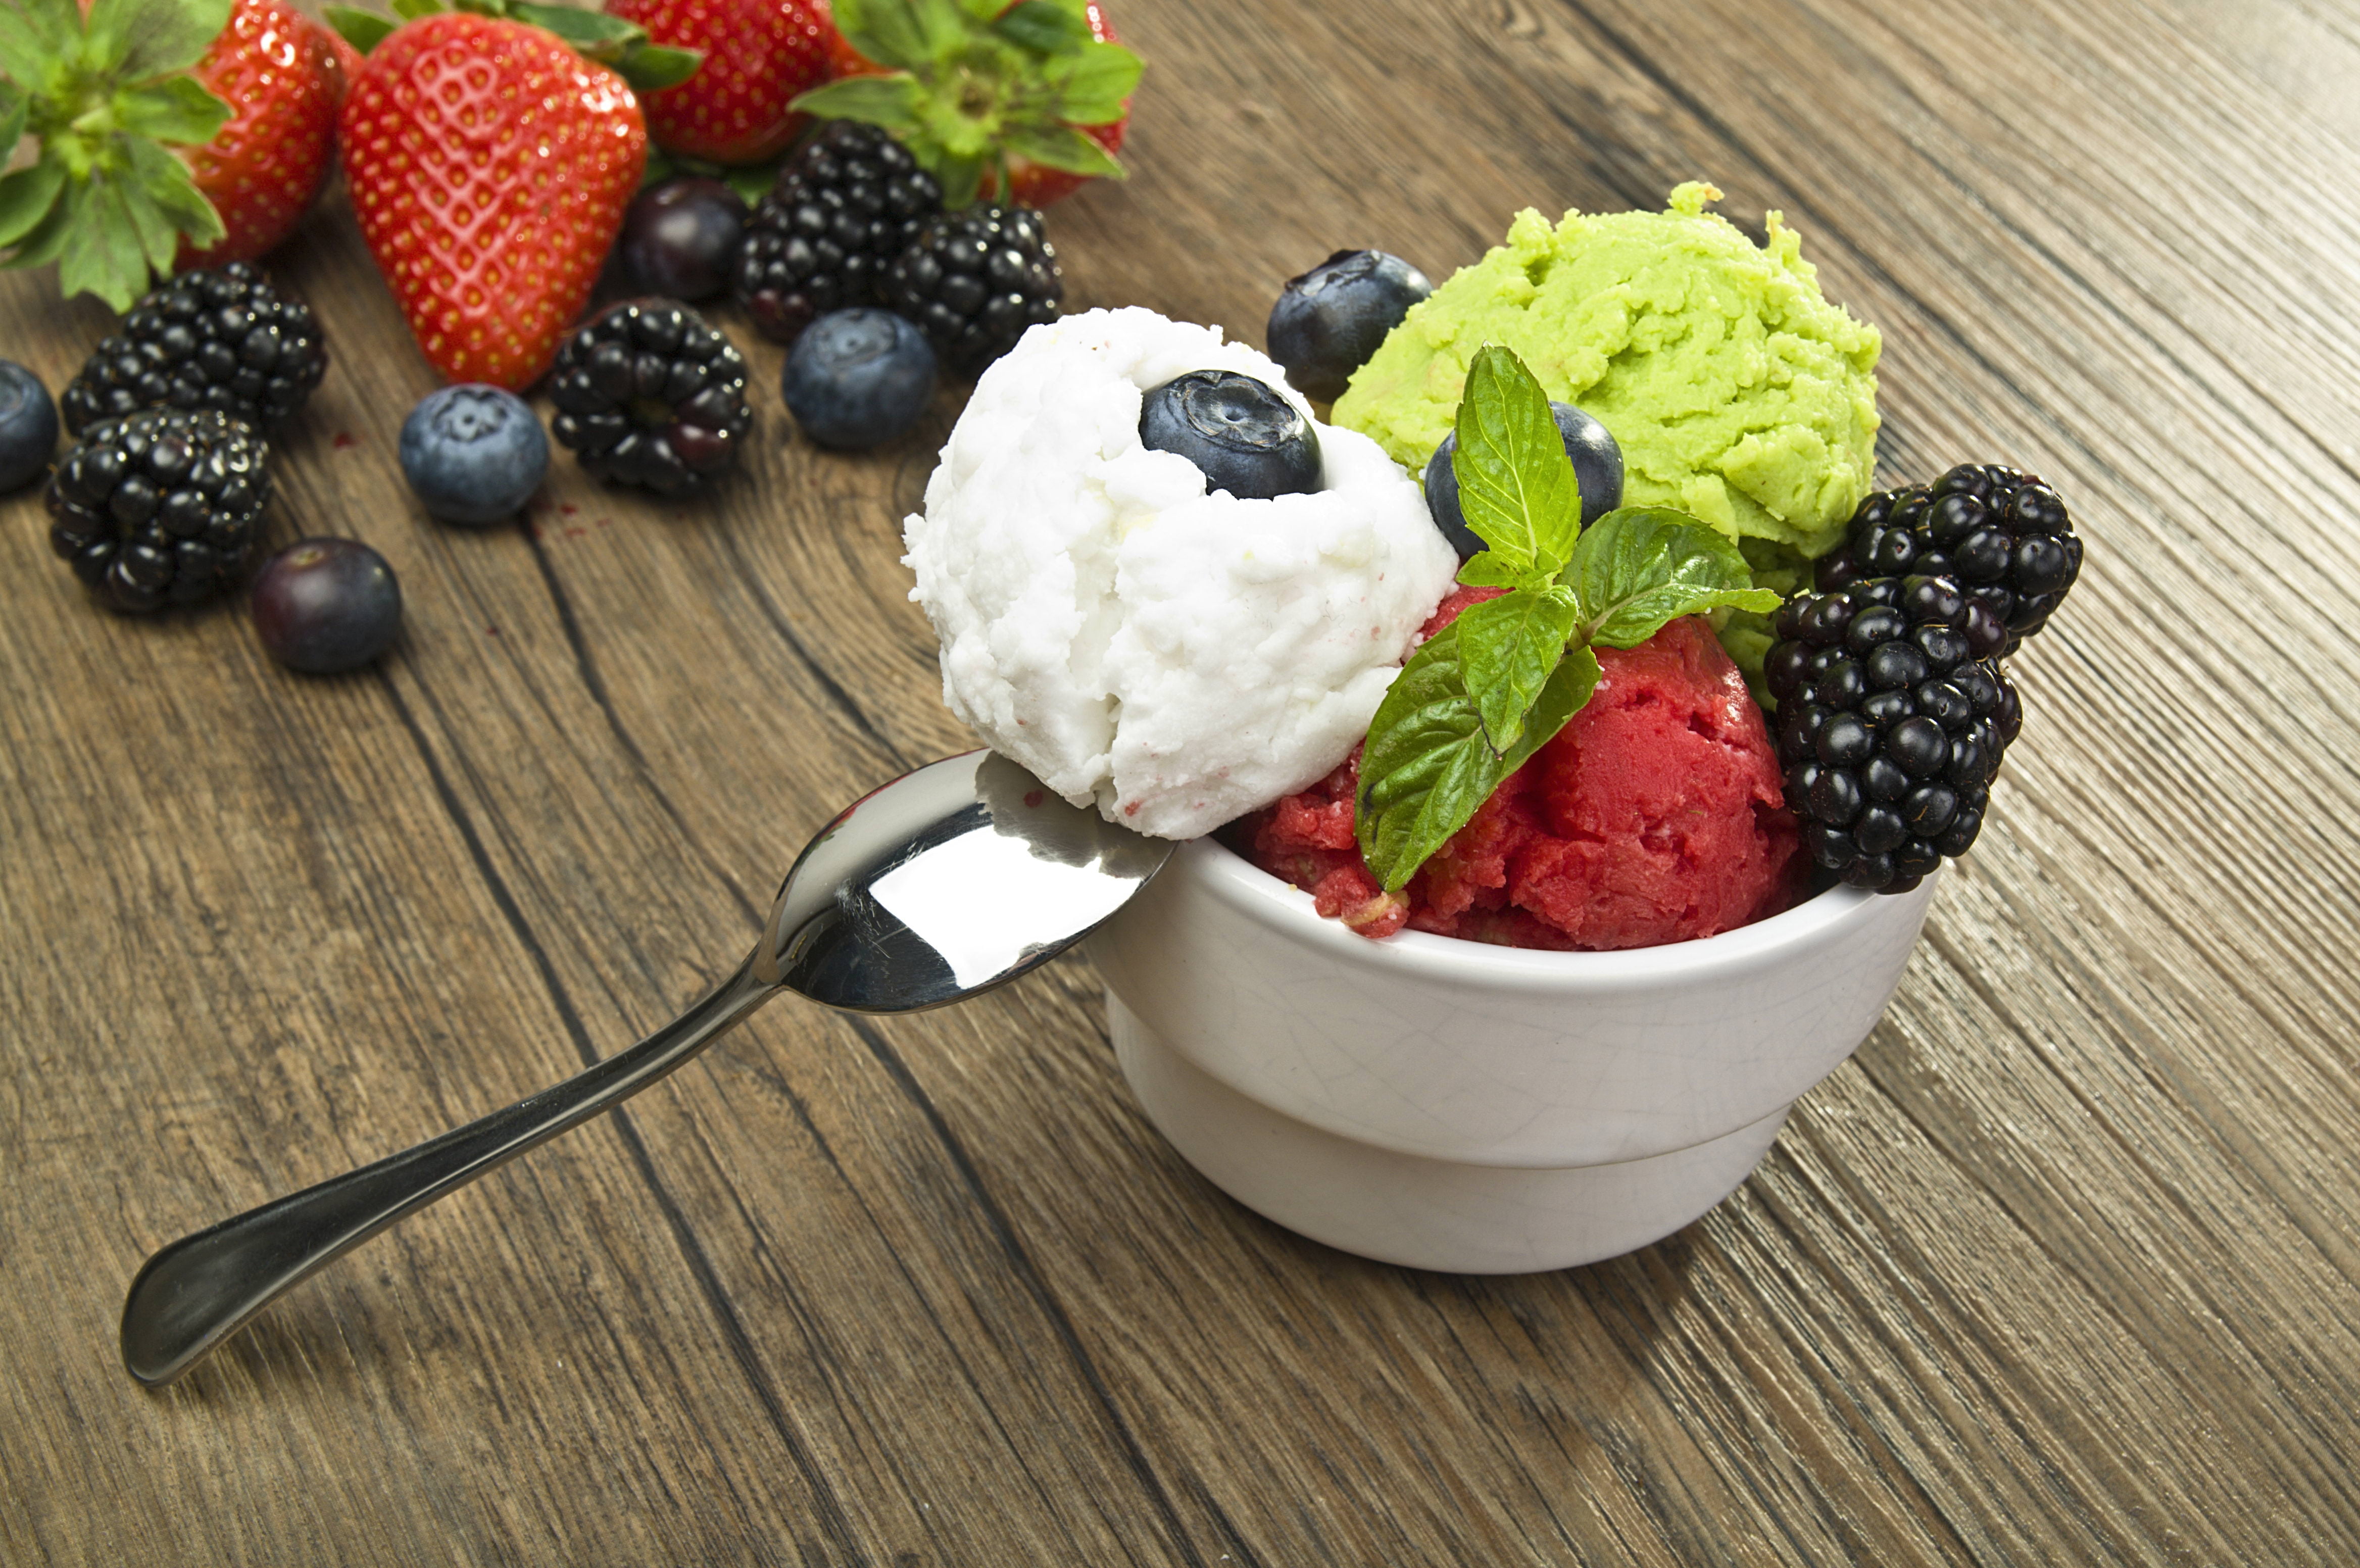 strawberry and vanilla ice cream, berries, blueberries, blackberries